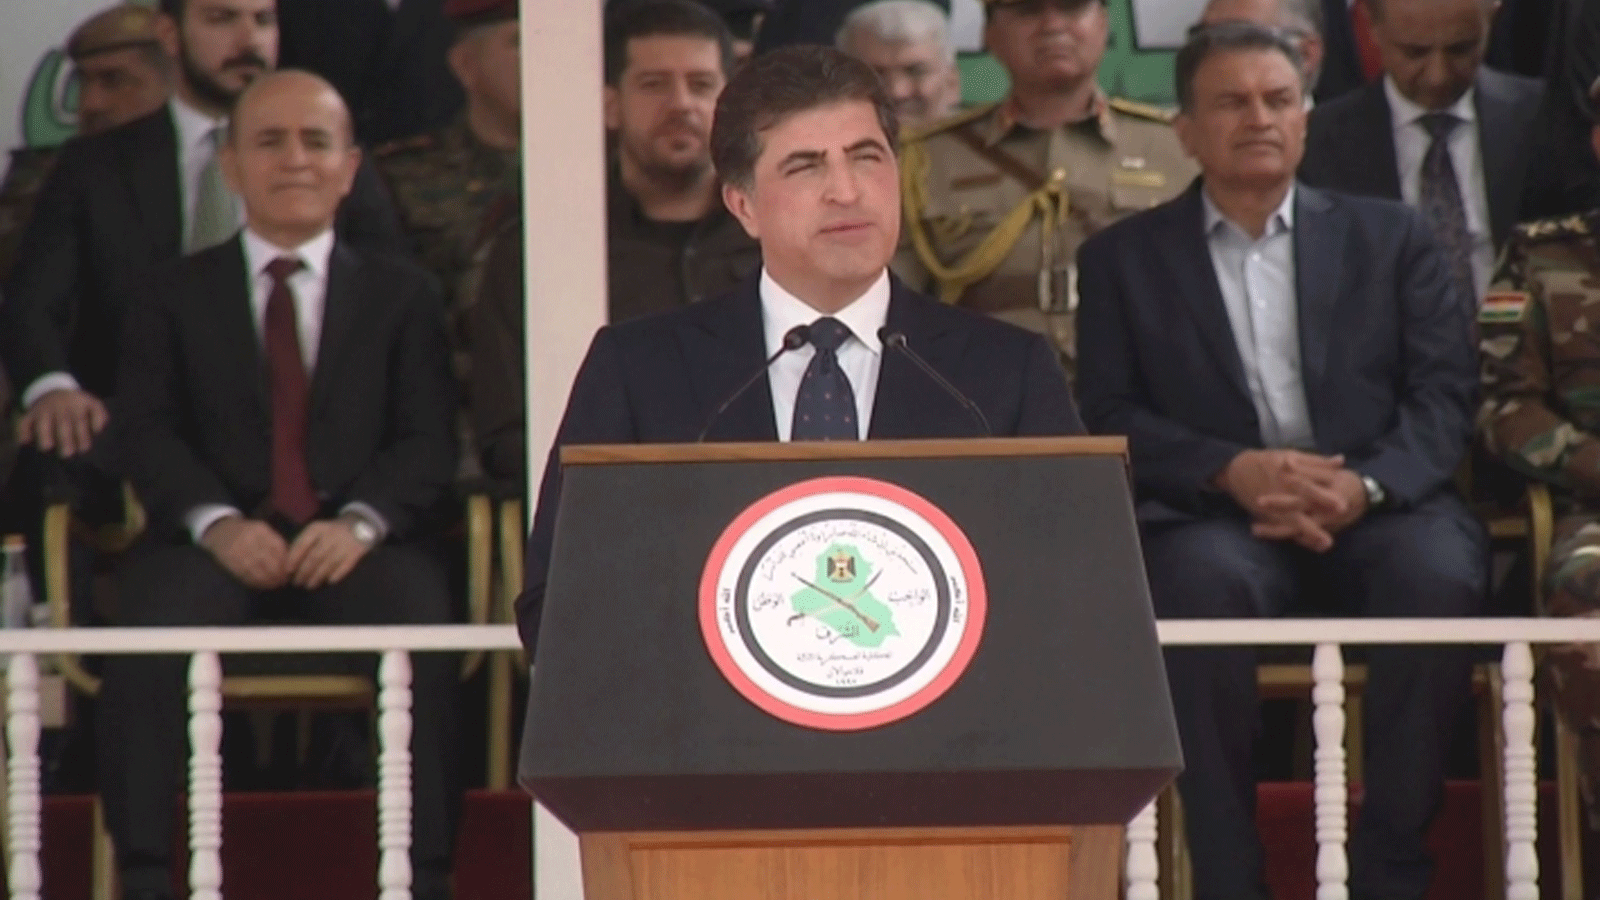 رئيس إقليم كردستان العراق متحدثاً في السليمانية الاحد 22 أيار\ مايو2022 عن الانسداد السياسي في البلاد وتوحيد البيت الكردي (تويتر)